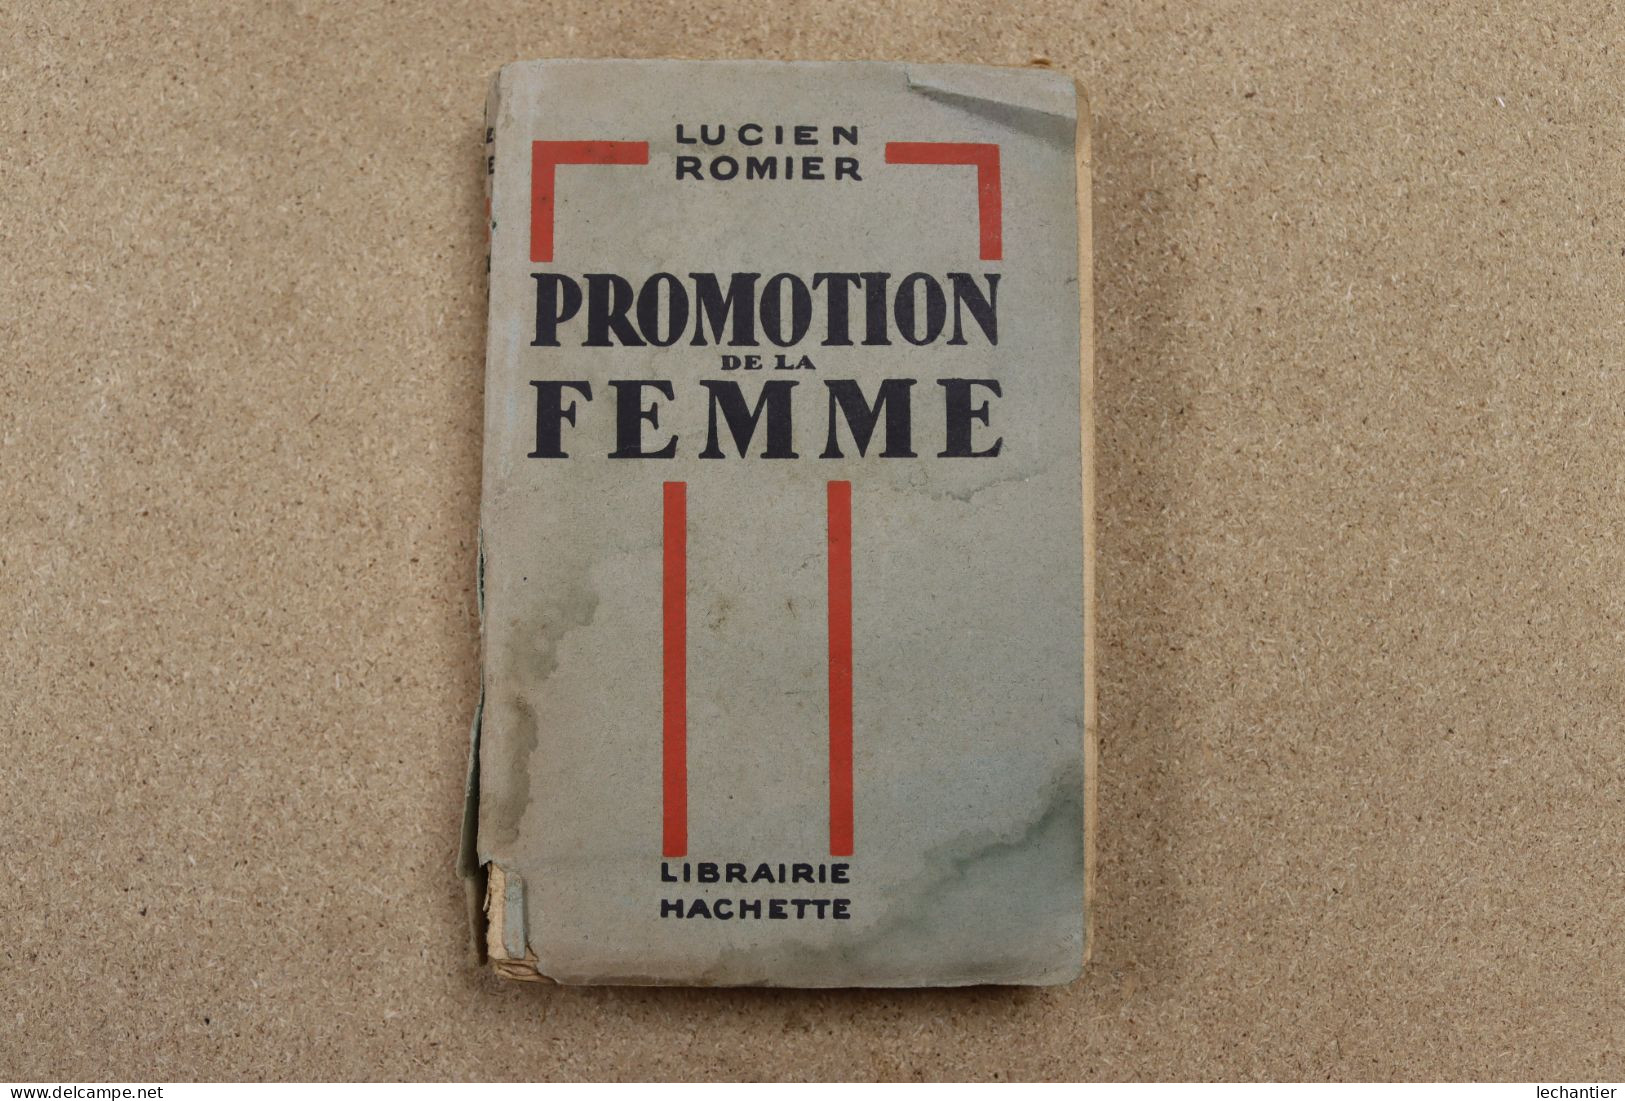 Promotion De La Femme - Lucien Romier - Hachette 1930 , 250 Pages 12,5X19 - Sociologia